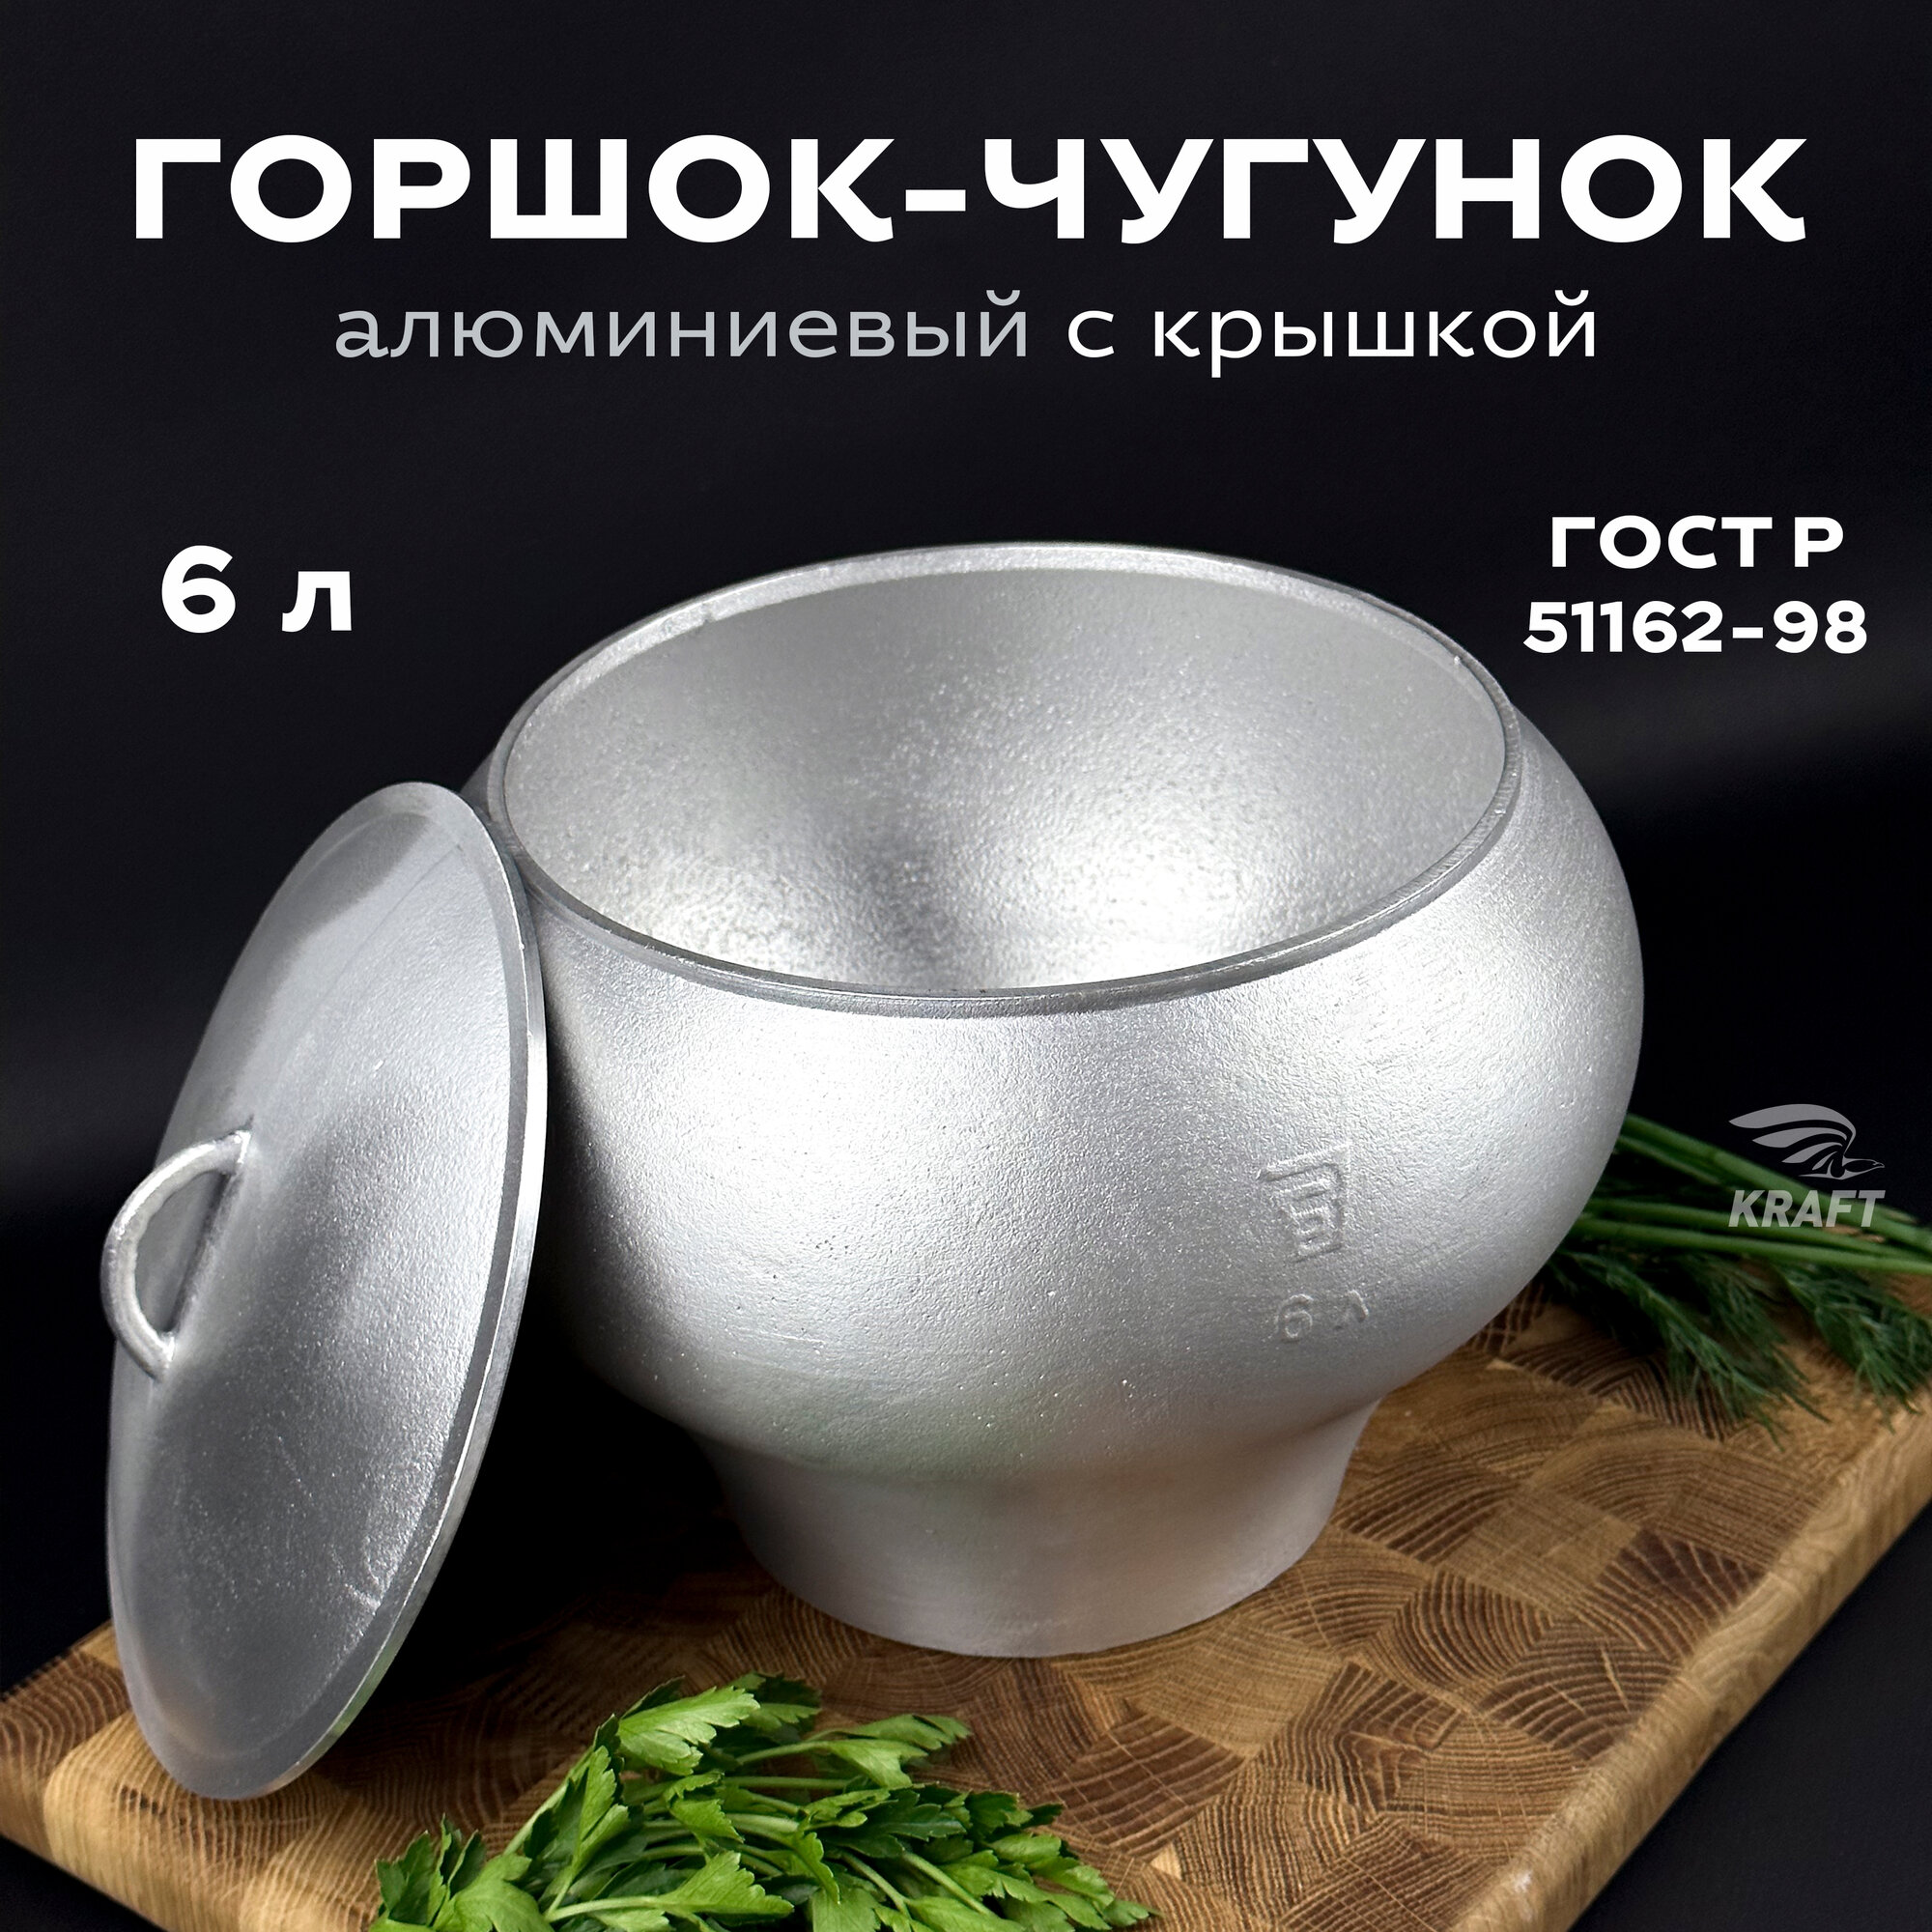 Горшок алюминиевый 6 литров с алюминиевой крышкой в комплекте для приготовления пищи на костре, в печи, в духовке